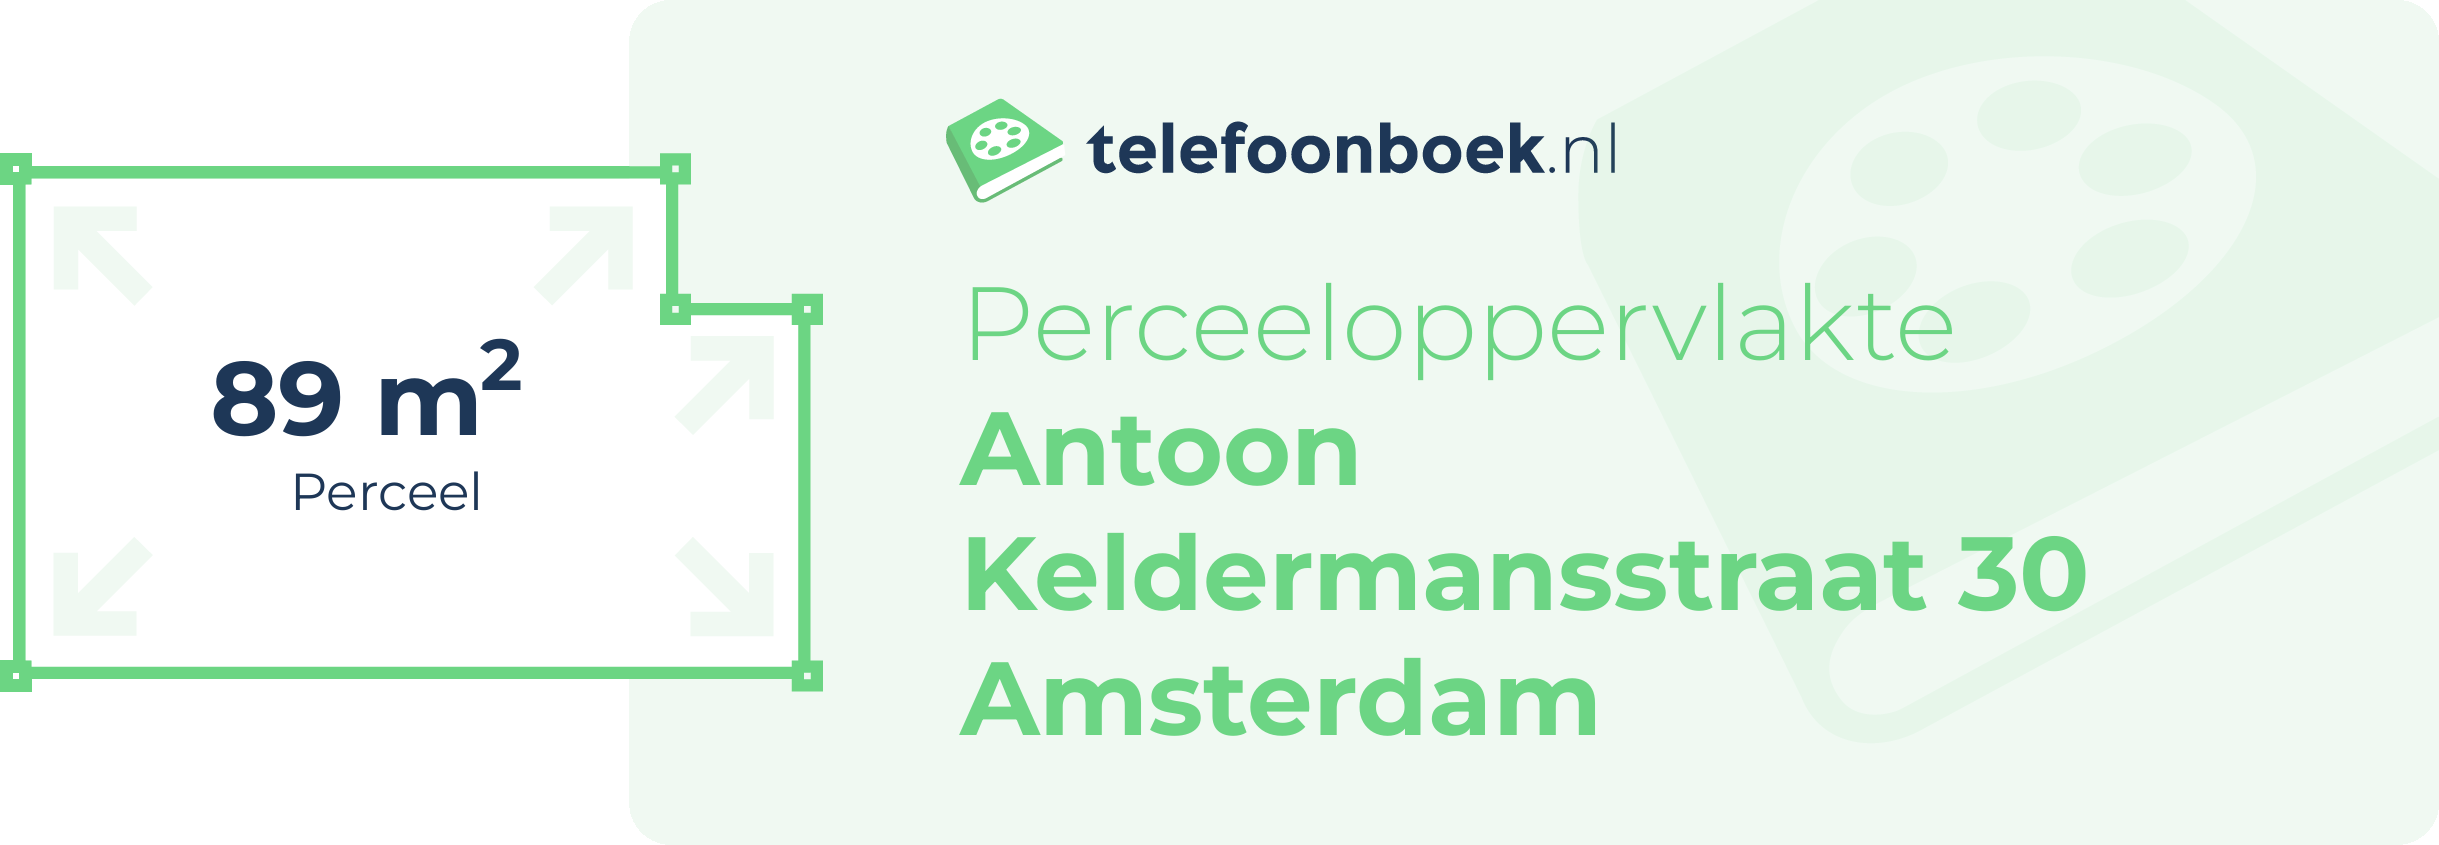 Perceeloppervlakte Antoon Keldermansstraat 30 Amsterdam